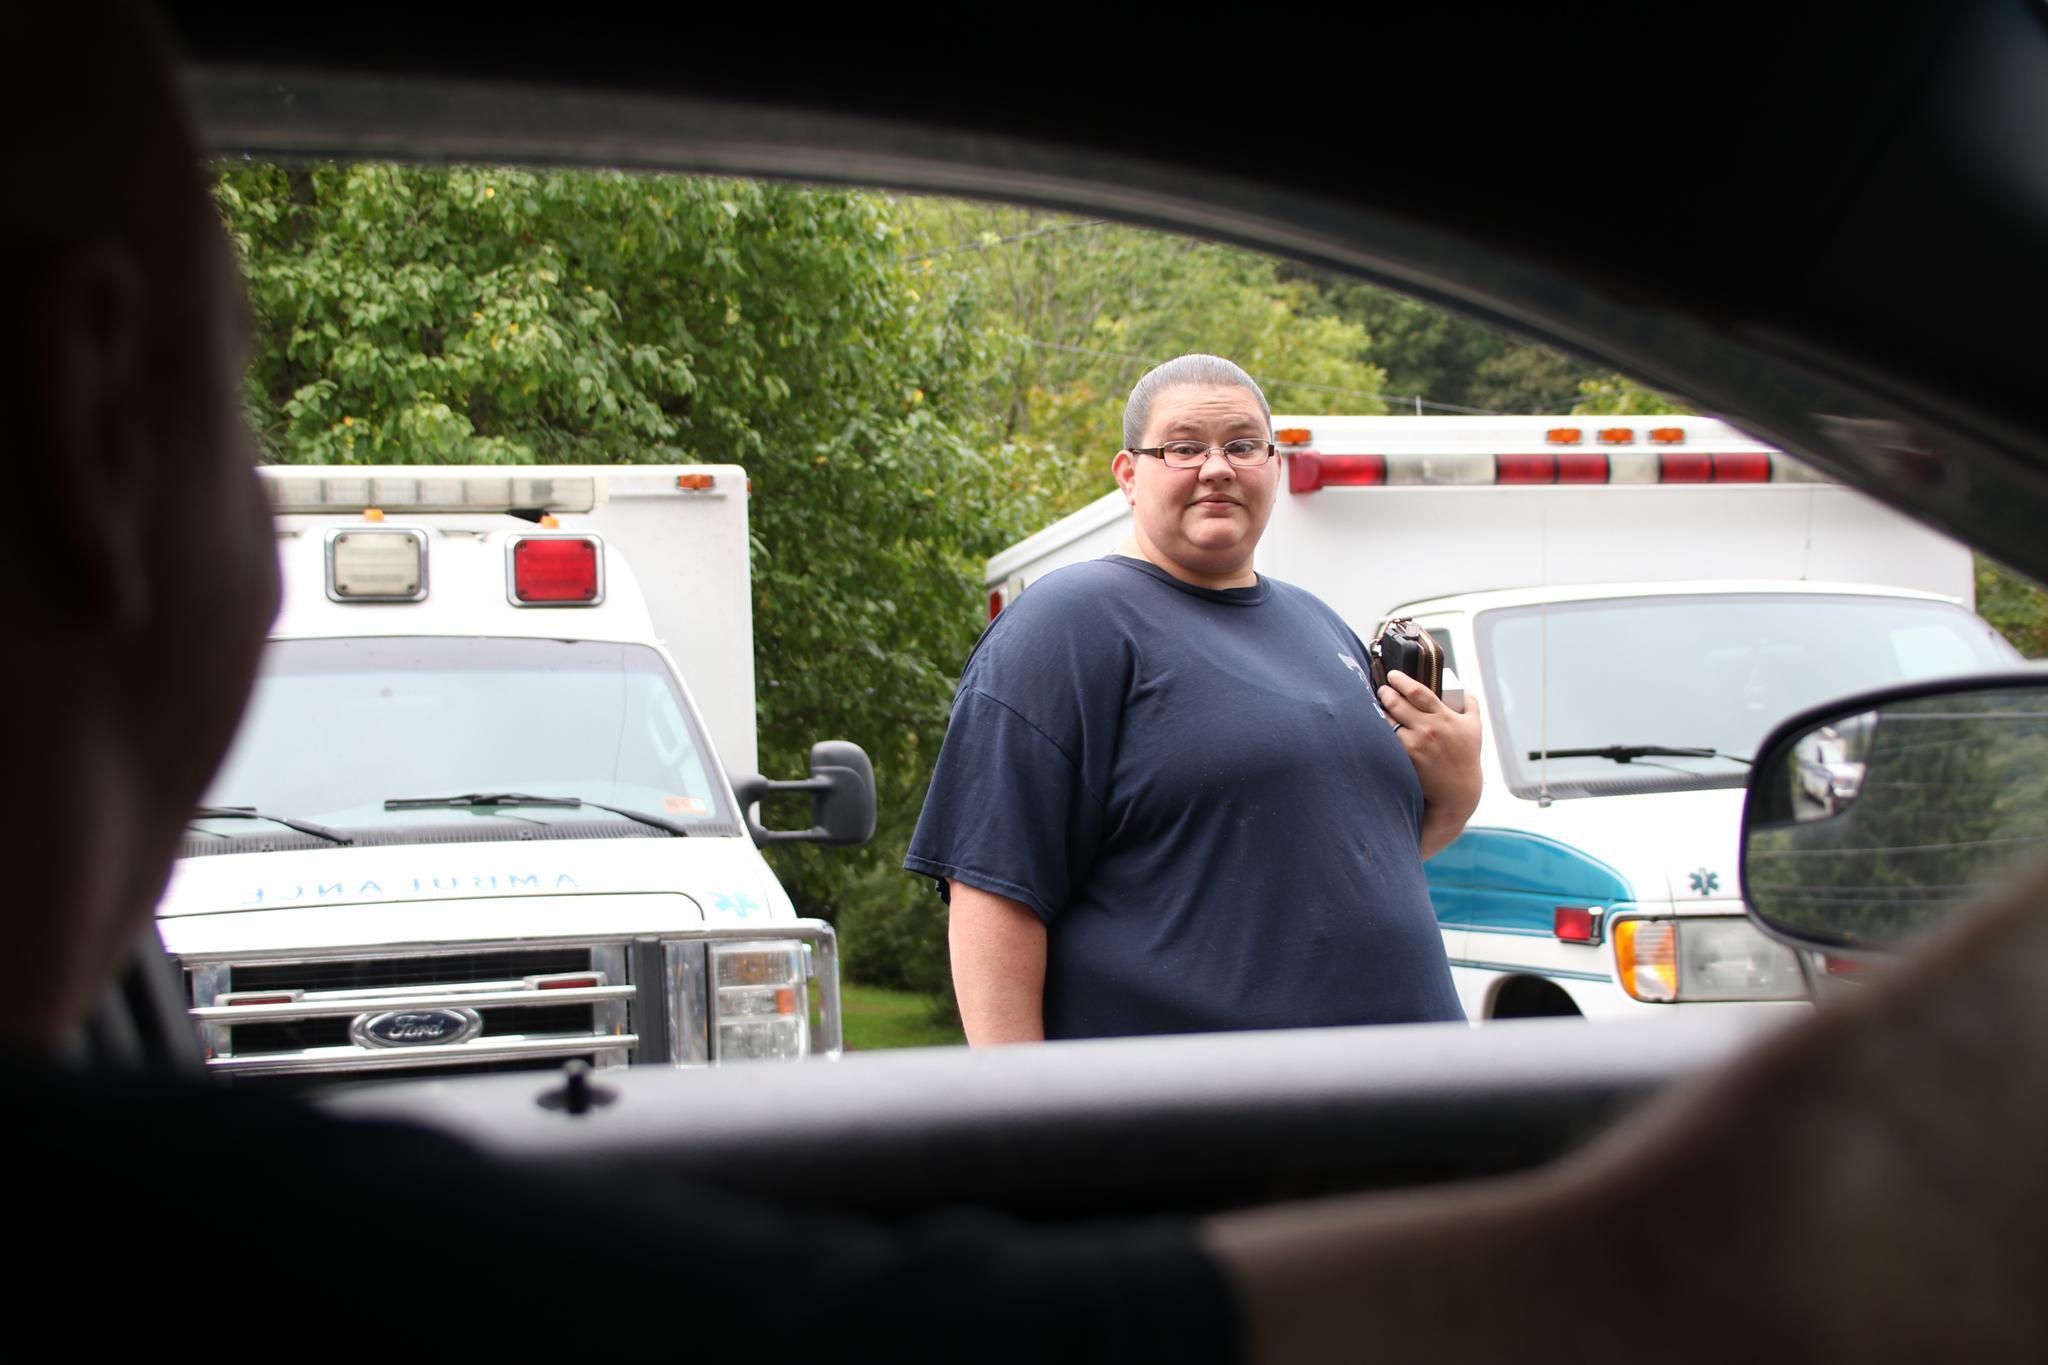 Ambulansesjåfør Katie Redden er på vei på jobb. Hun slår av en prat med politisjef JP Stevens som kjører morgenrunden i distriktet. Over halvparten av Reddens jobb handler om å rykke ut på narkorelaterte saker.